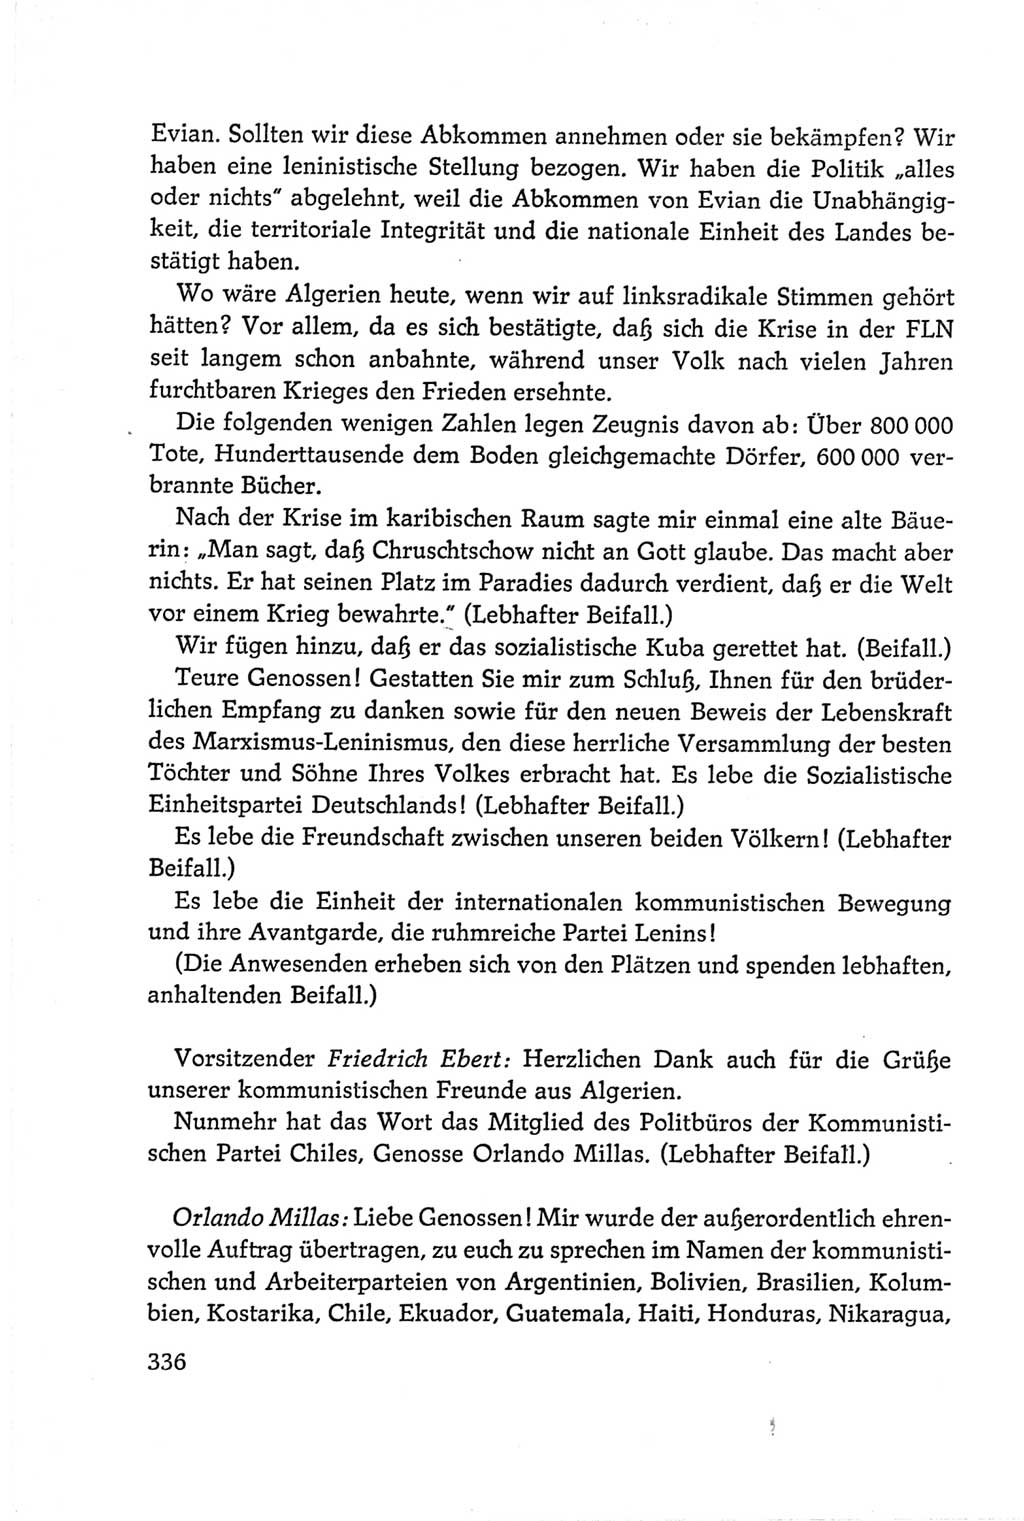 Protokoll der Verhandlungen des Ⅵ. Parteitages der Sozialistischen Einheitspartei Deutschlands (SED) [Deutsche Demokratische Republik (DDR)] 1963, Band Ⅱ, Seite 336 (Prot. Verh. Ⅵ. PT SED DDR 1963, Bd. Ⅱ, S. 336)